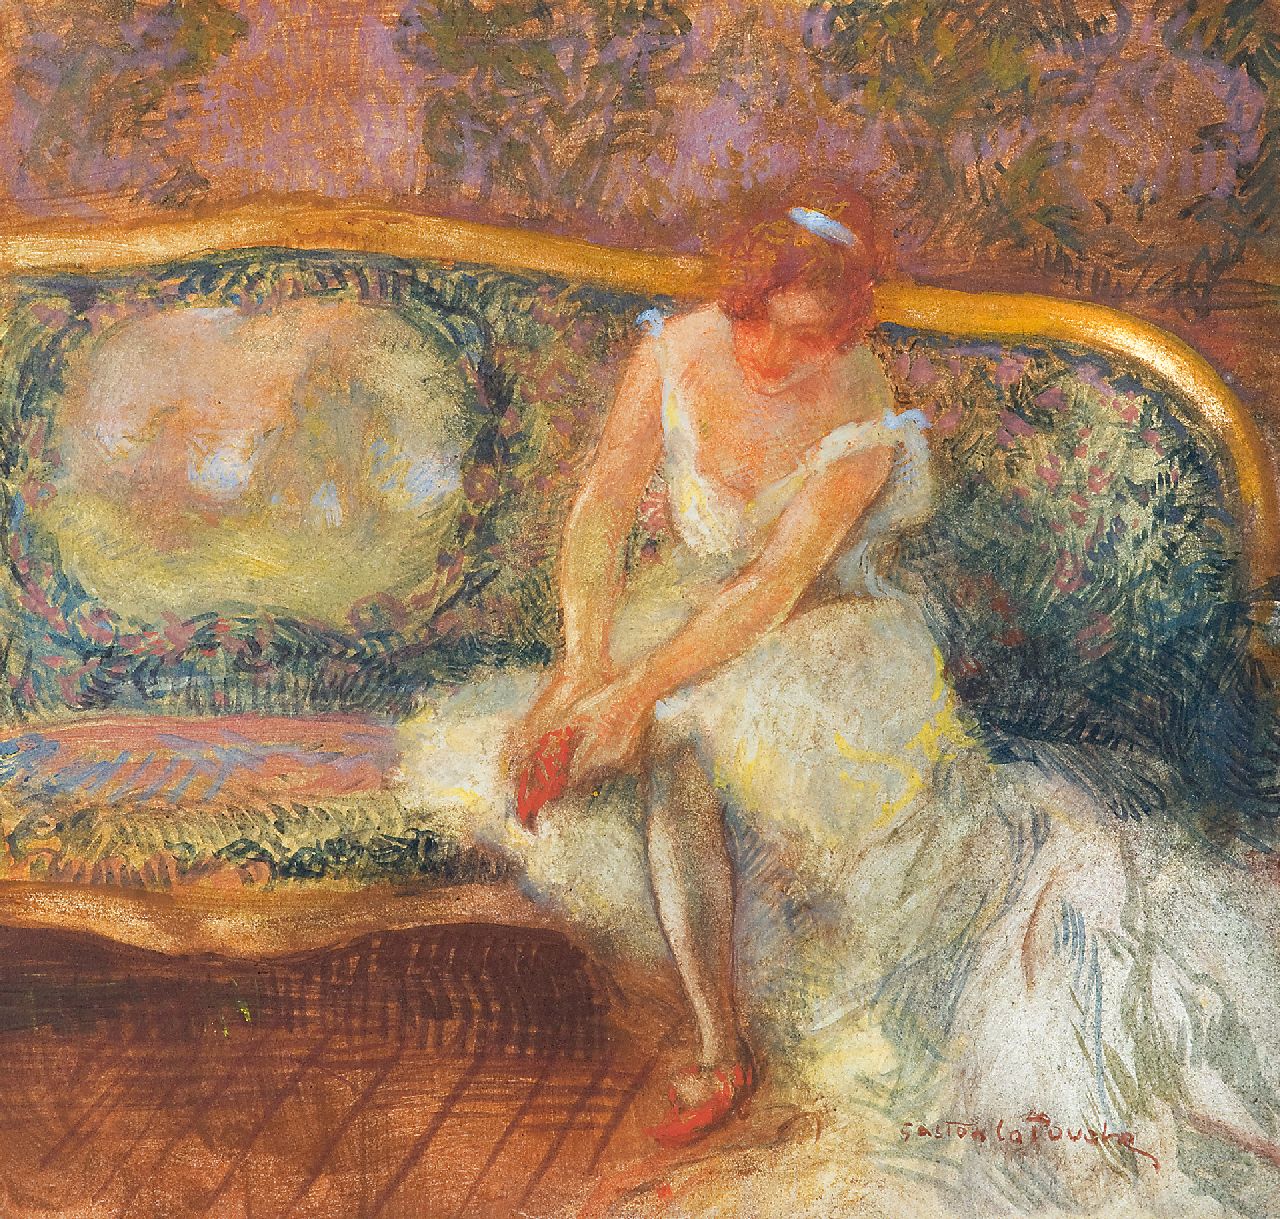 La Touche G.  | Gaston La Touche, Seated ballerina, crayon and gouache on board 23.1 x 24.3 cm, signed l.r.